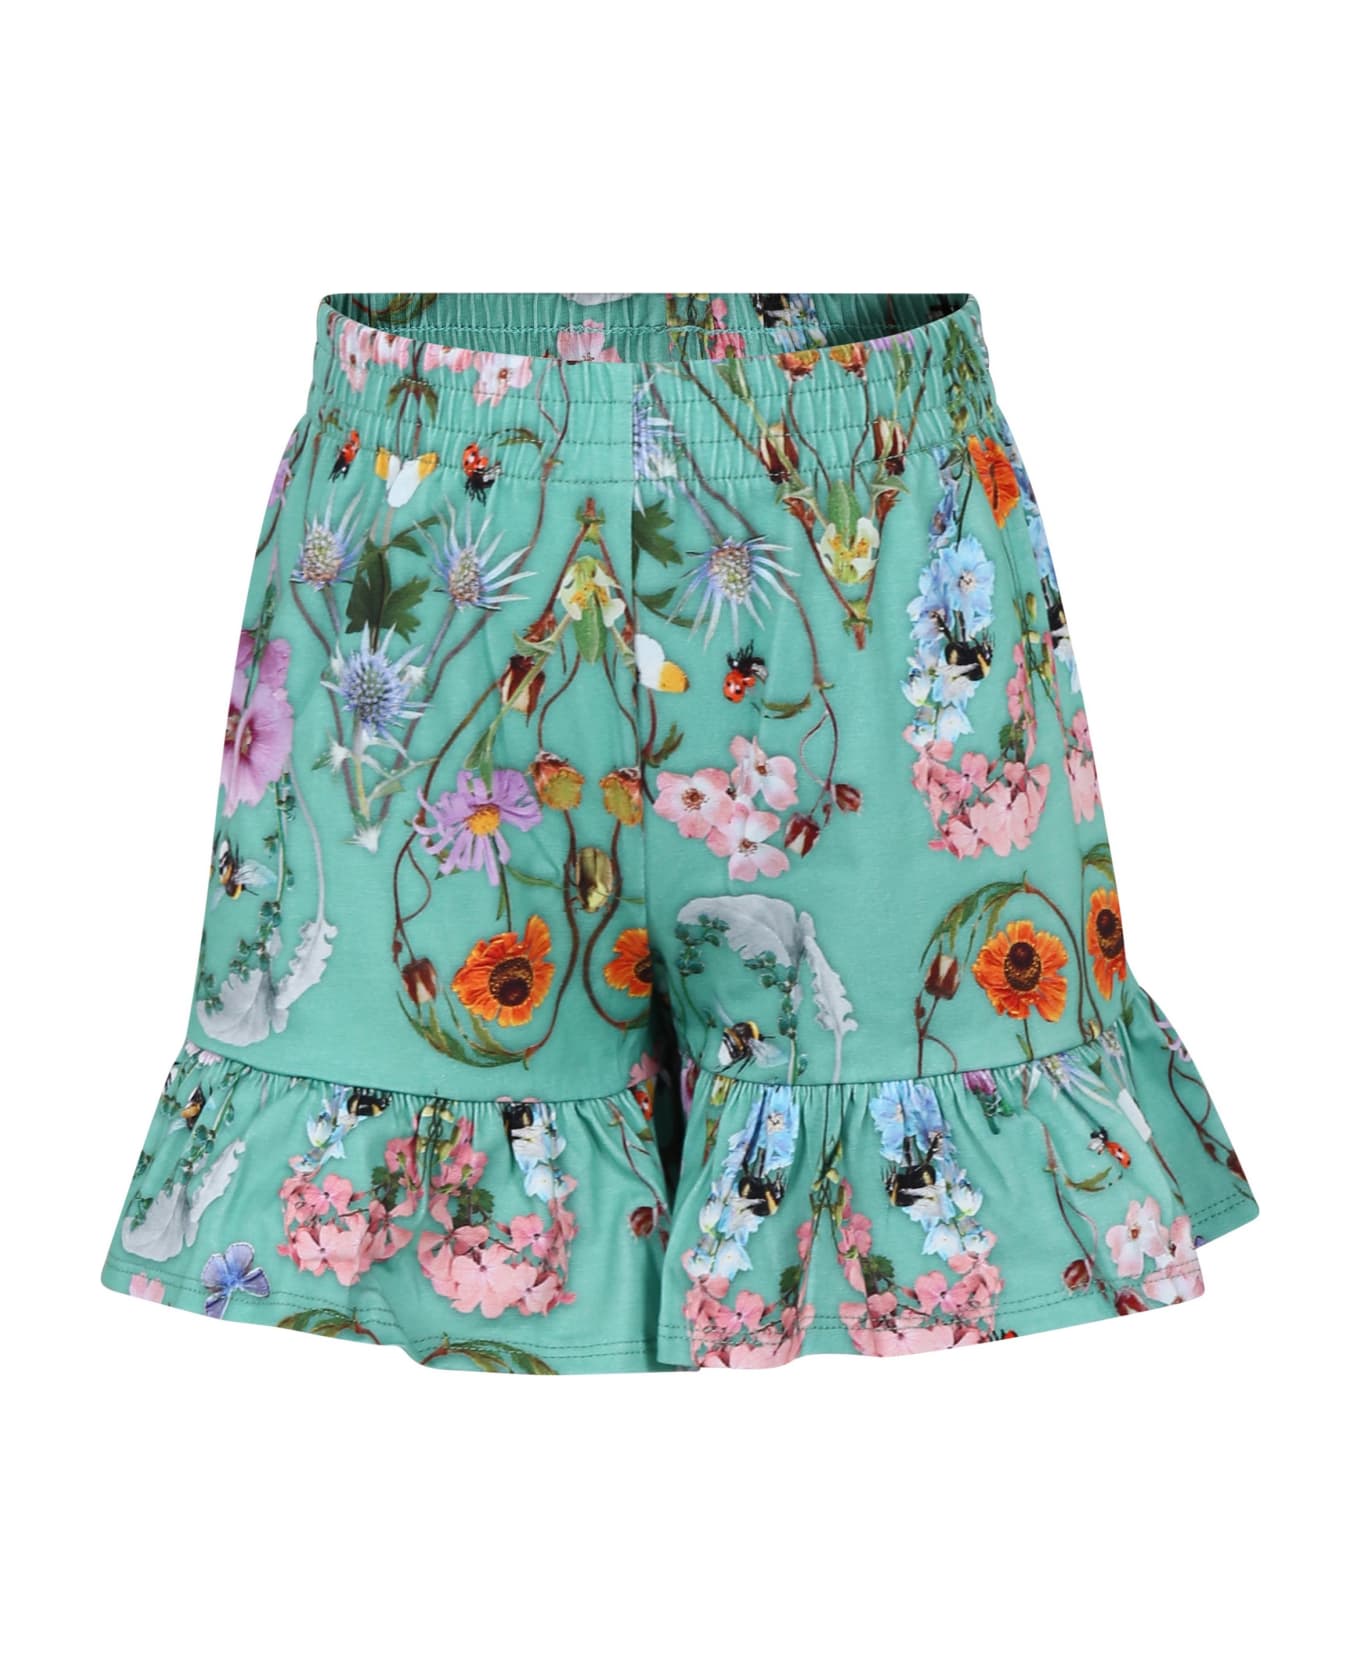 Molo Green Casual Shorts For Girl - Green